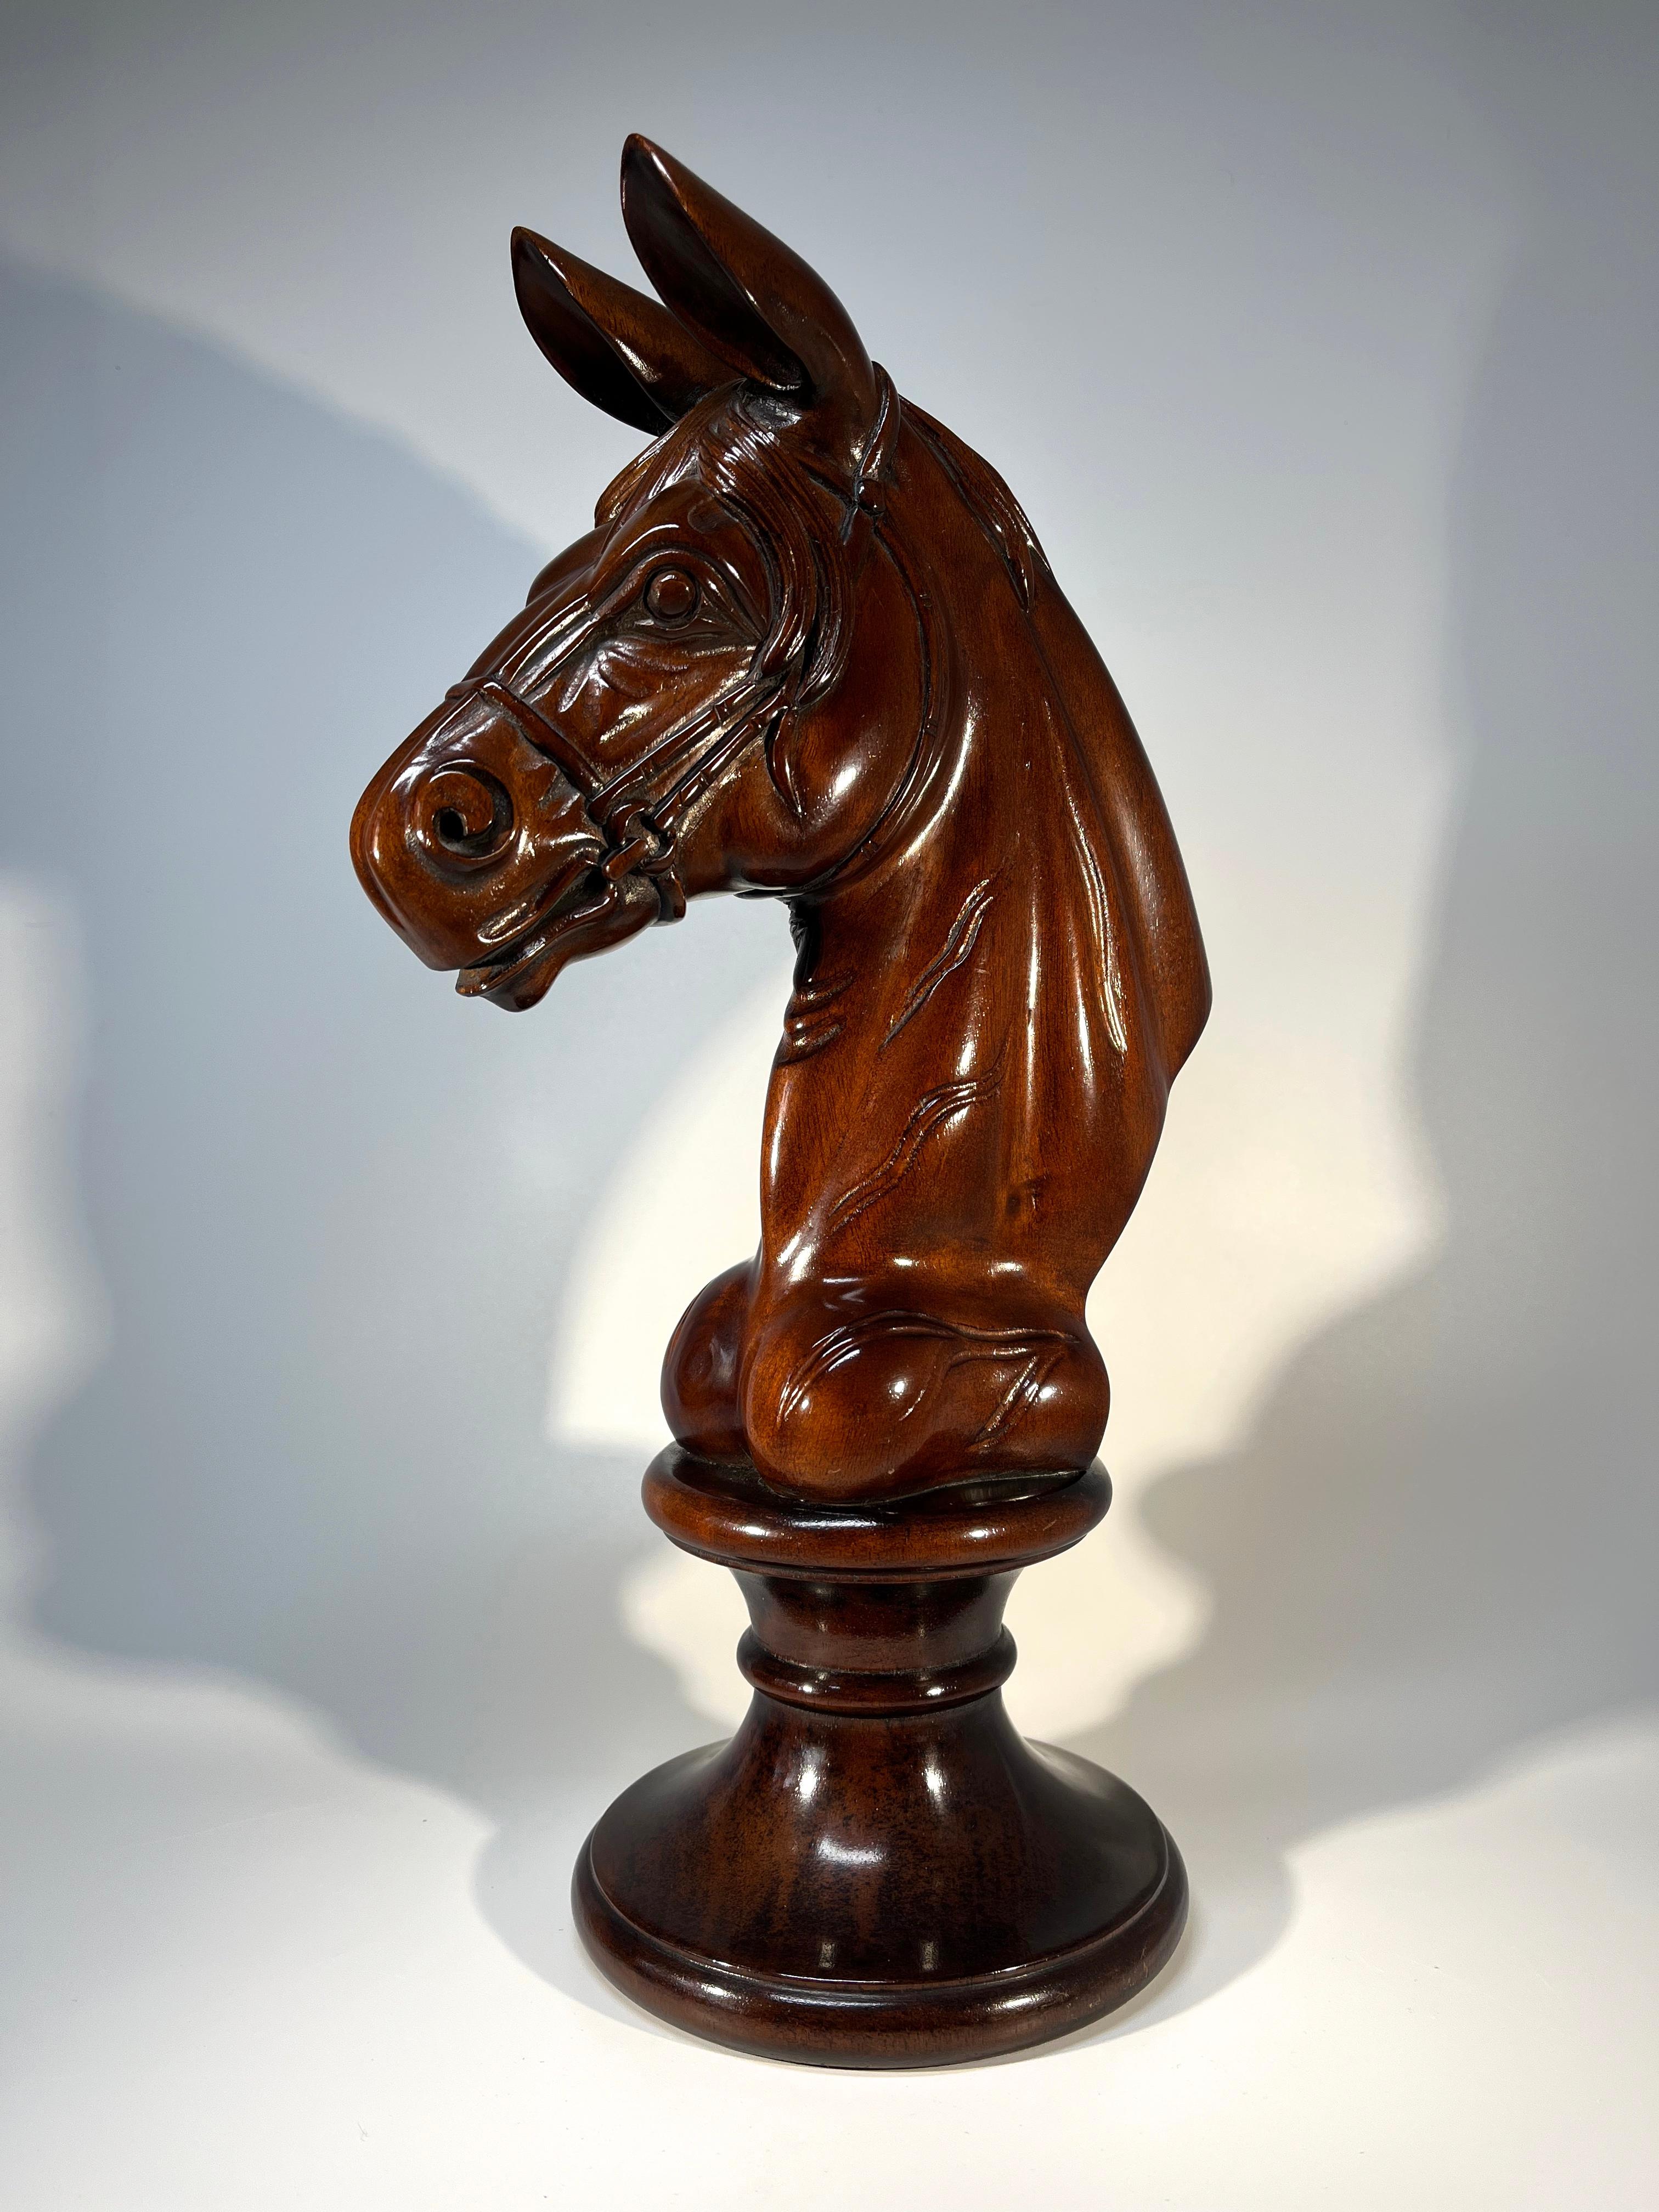 Dieser elegante italienische Pferdekopf aus Mahagoniholz auf einem Sockel ist einem Karussell-Galopper ähnlich.
Sammlerstück und Kunstobjekt für den Pferdeliebhaber
CIRCA 1960er Jahre
Höhe 14 Zoll, Breite 8 Zoll, Tiefe 5,5 Zoll
In sehr gutem